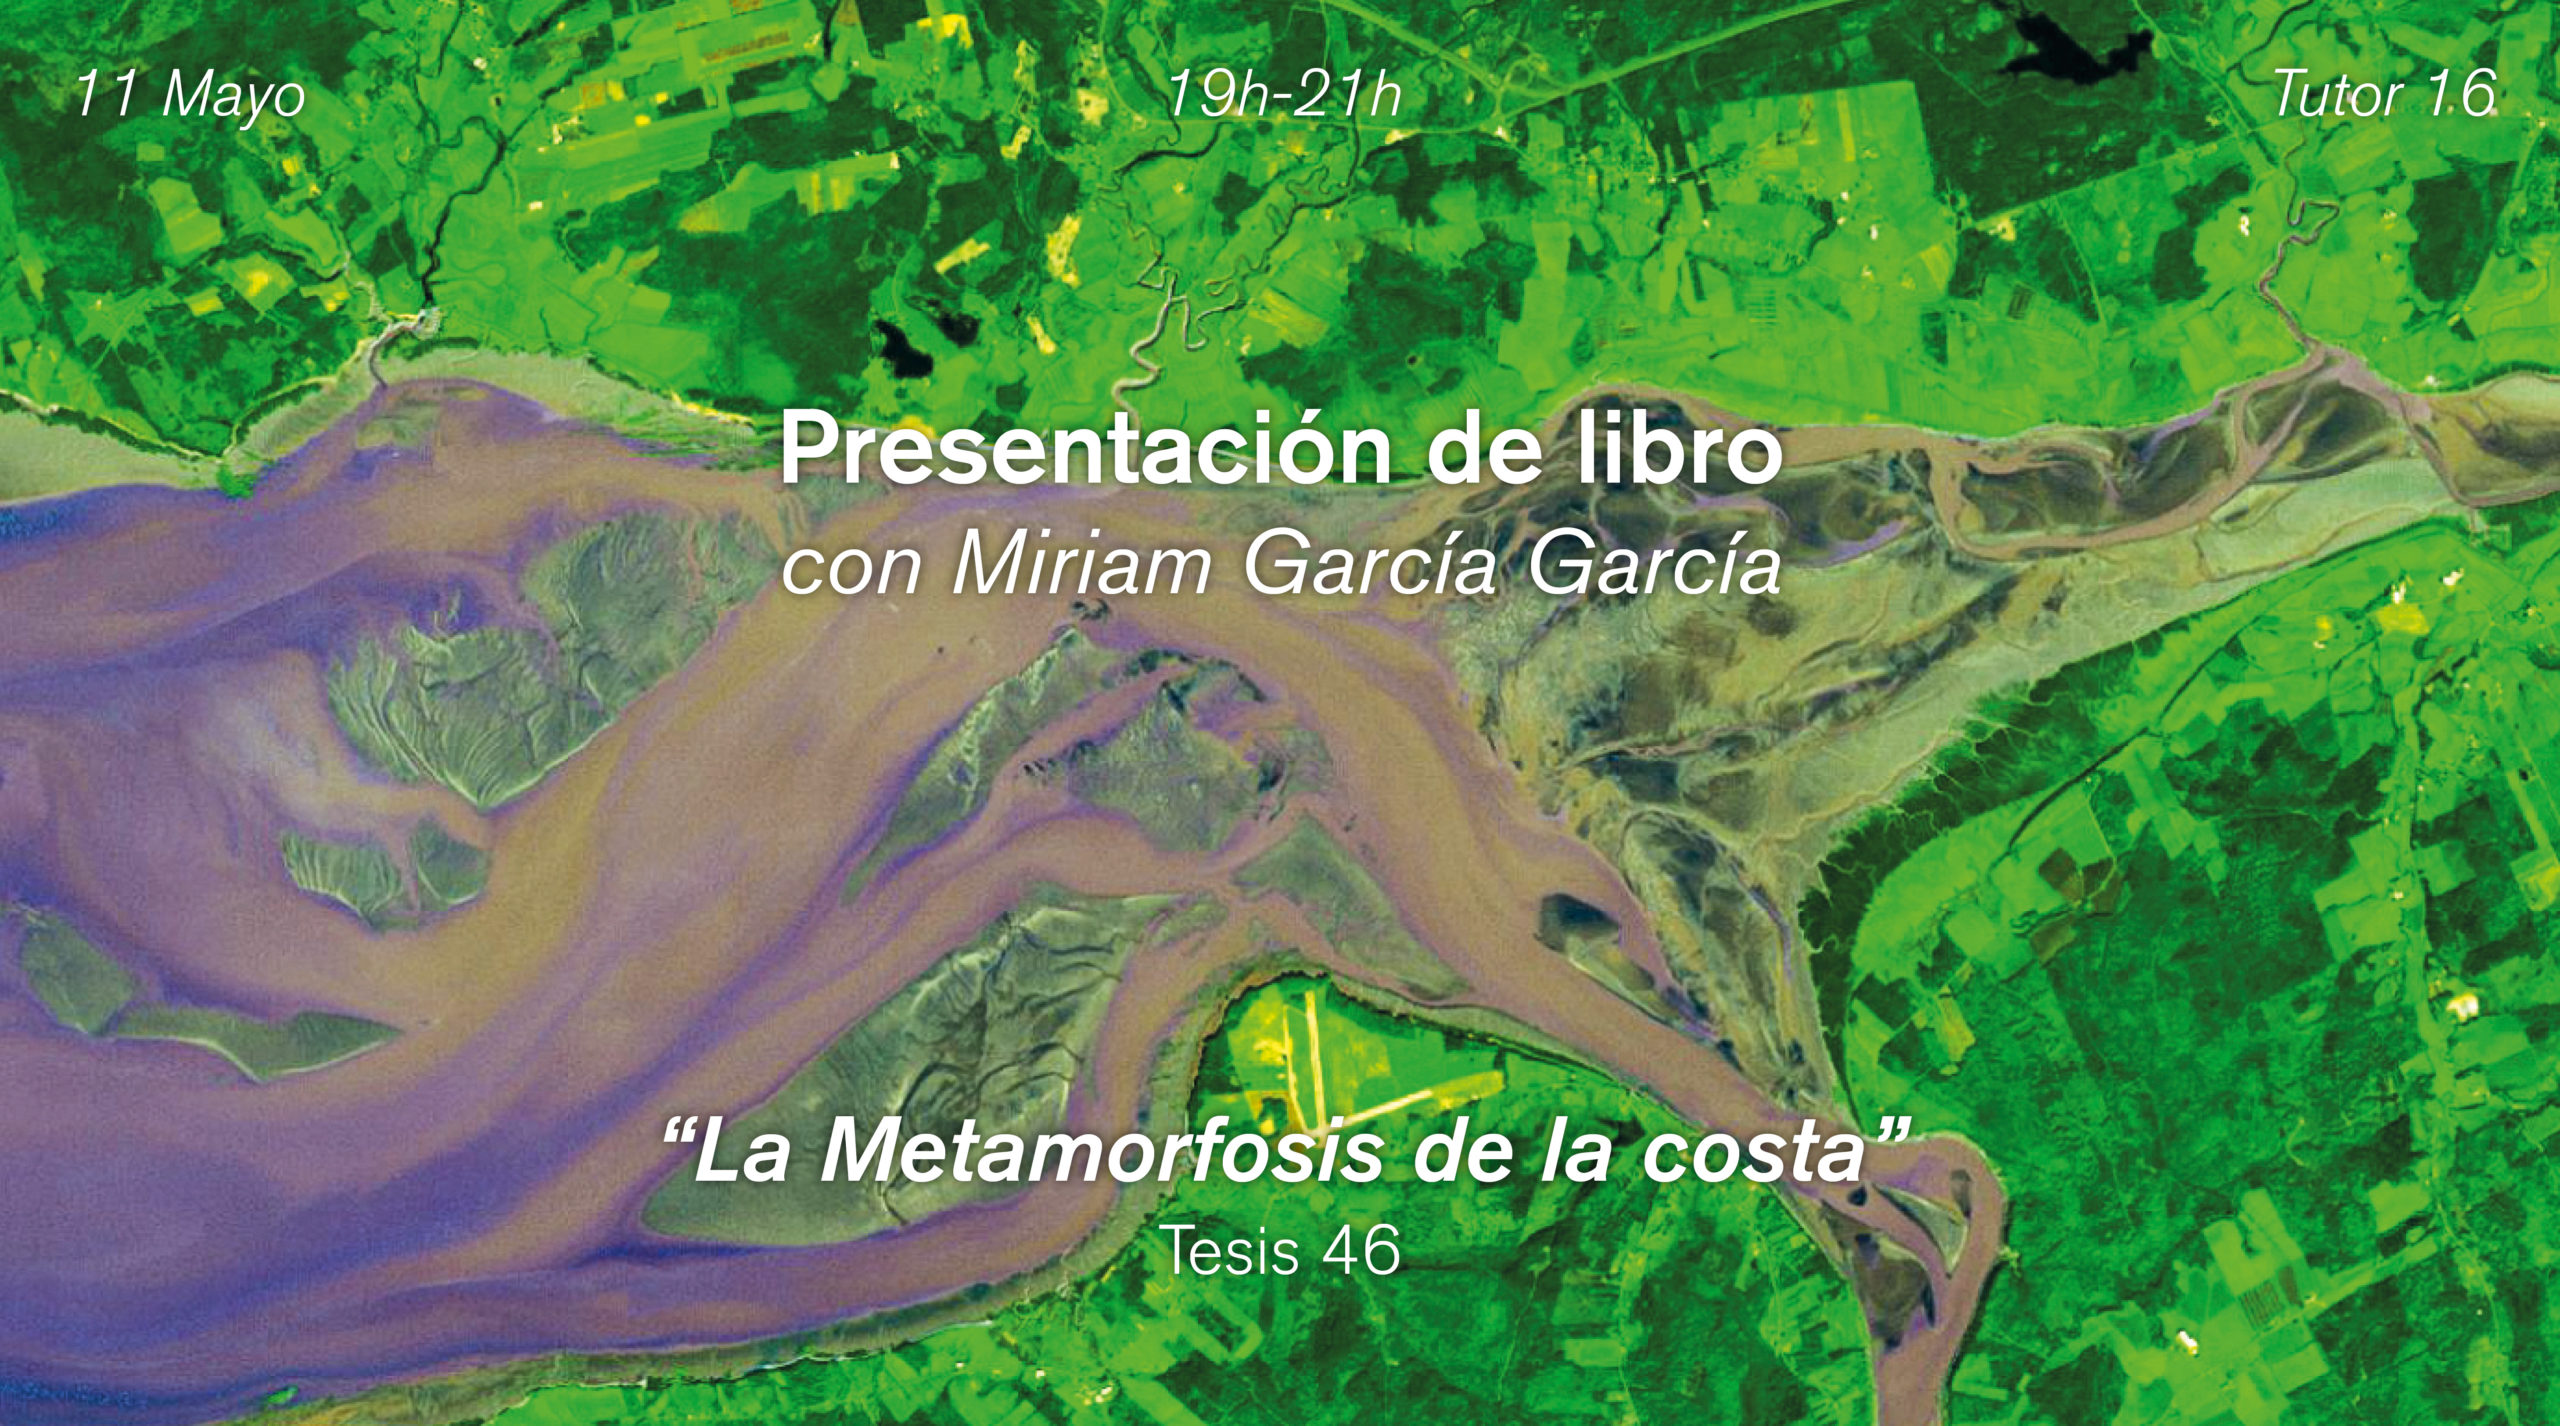 Presentación del libro “La metamorfosis de la costa: paisajes resilientes y cambio climático”, de Miriam García García